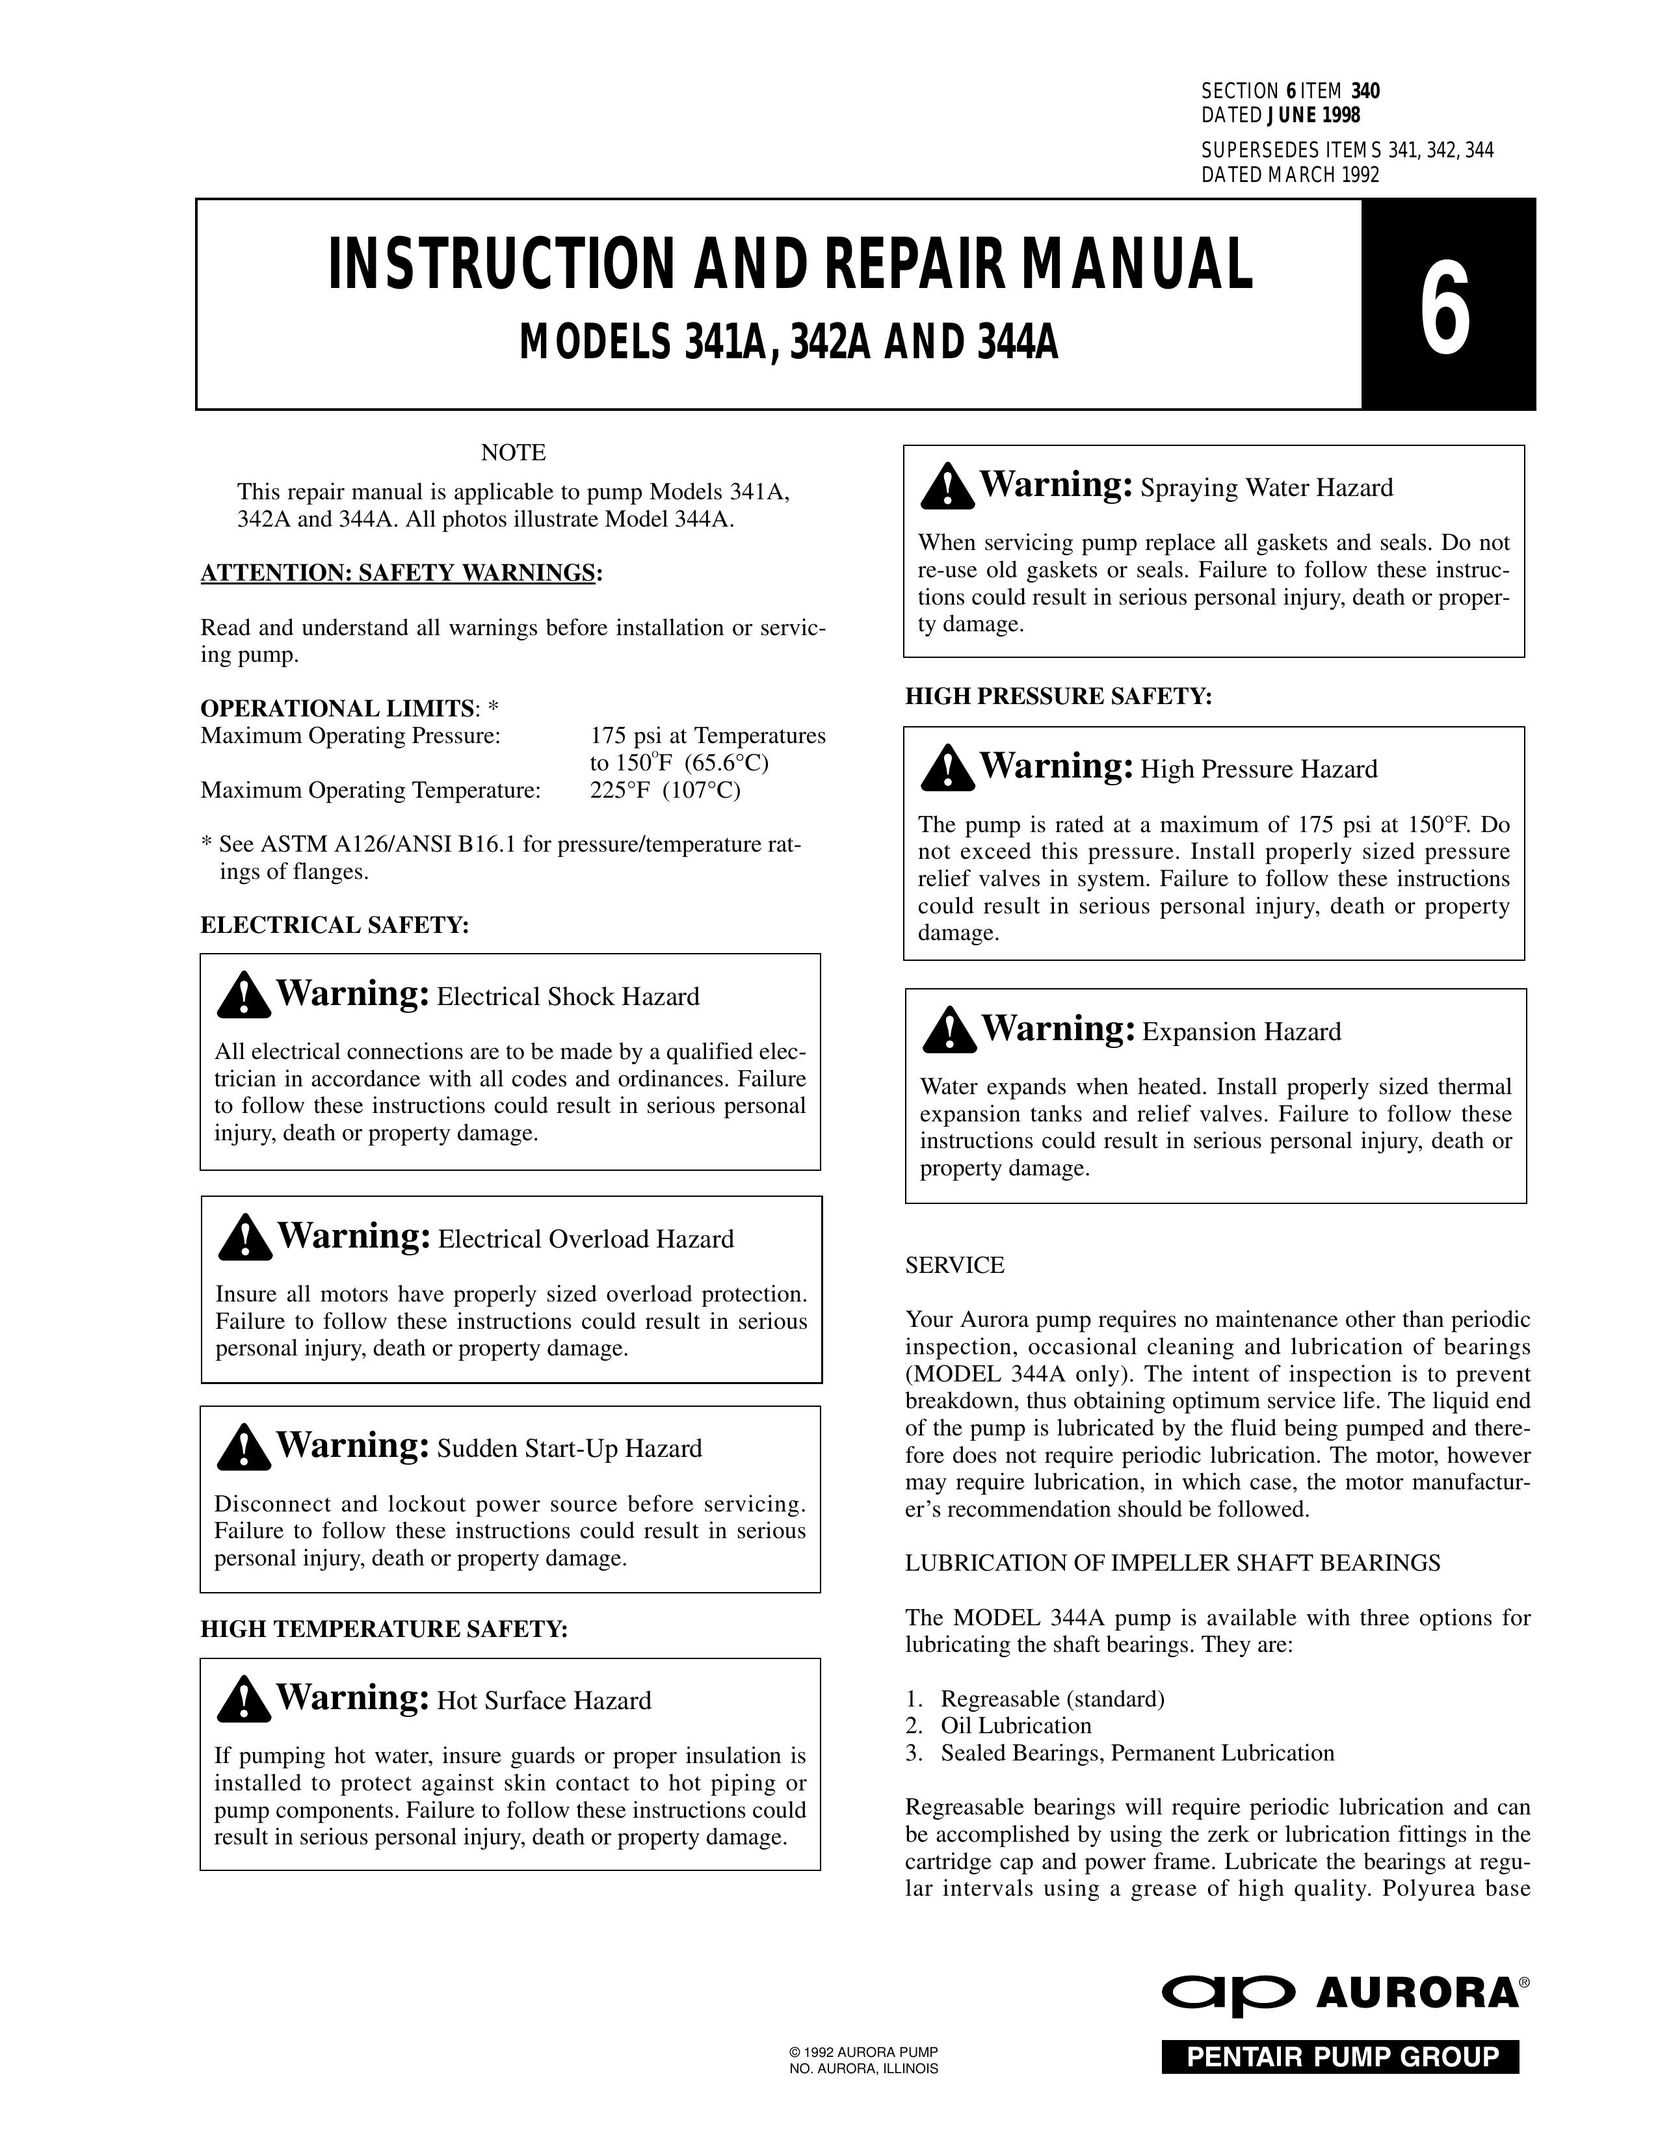 Aurora of America 344A Heat Pump User Manual